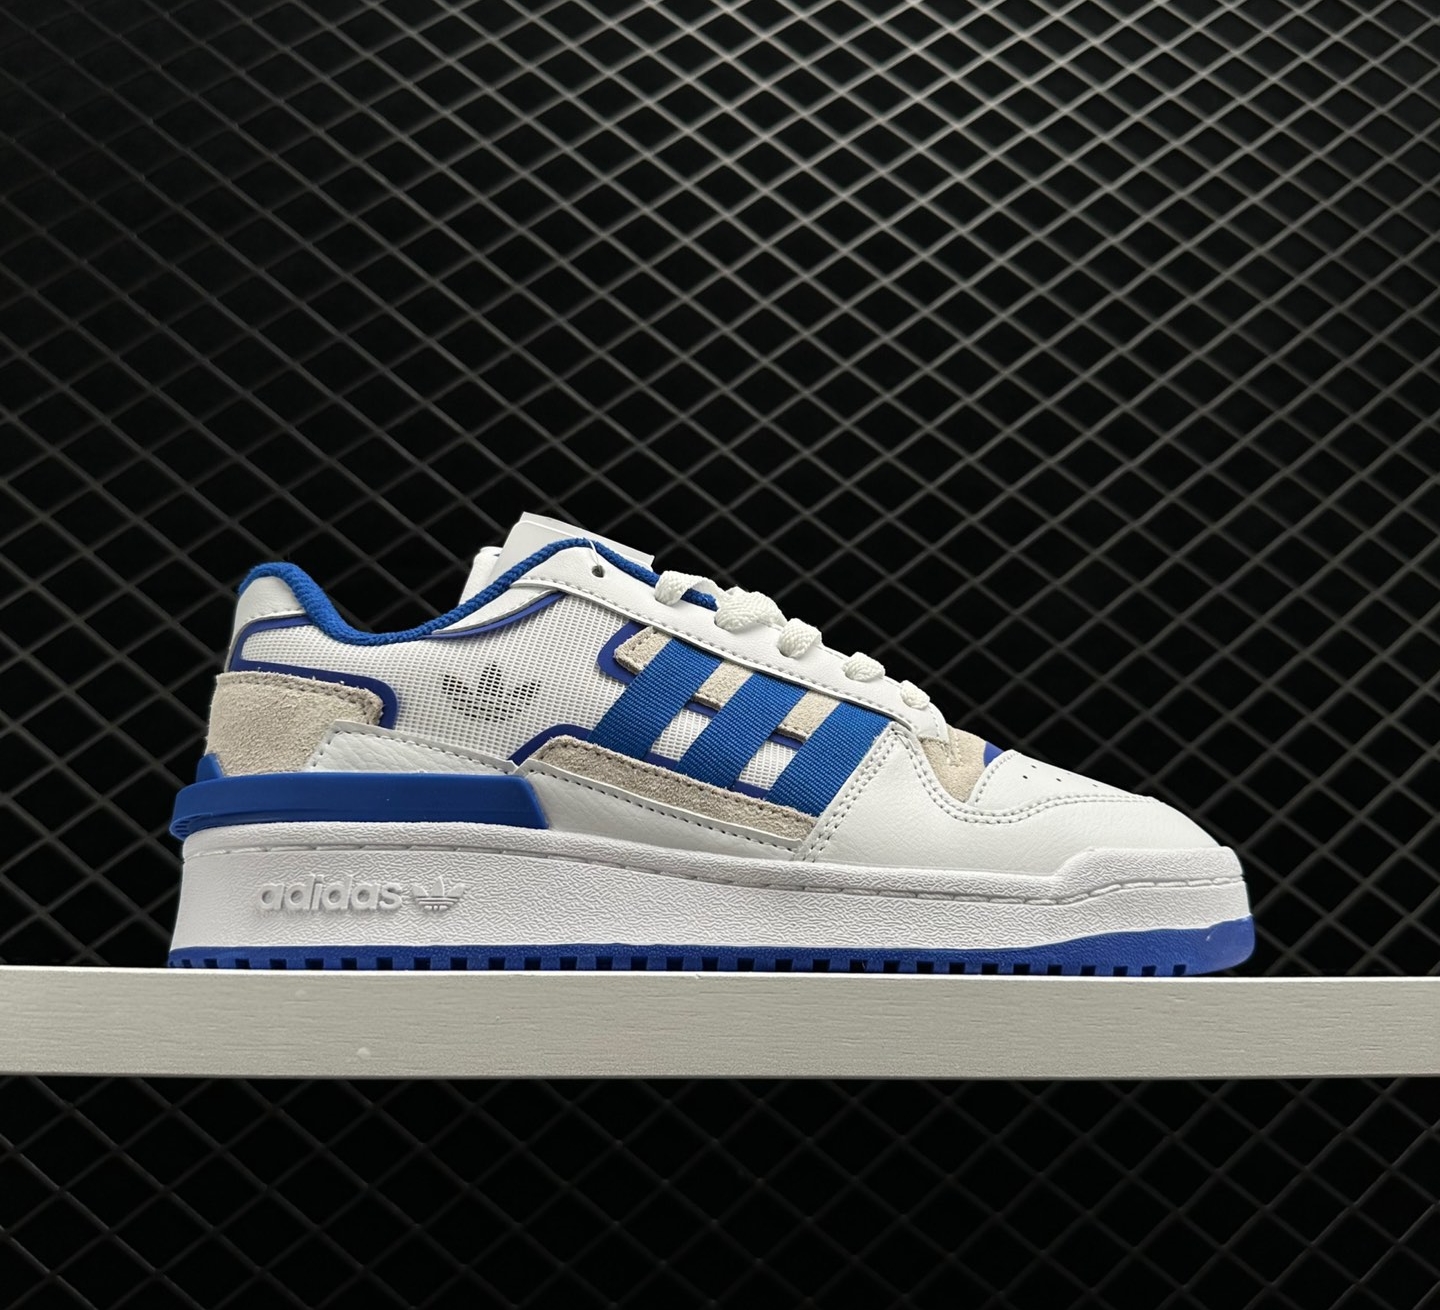 Adidas Originals Forum Exhibit Low 2 Blue White - Iconic Streetwear Classics